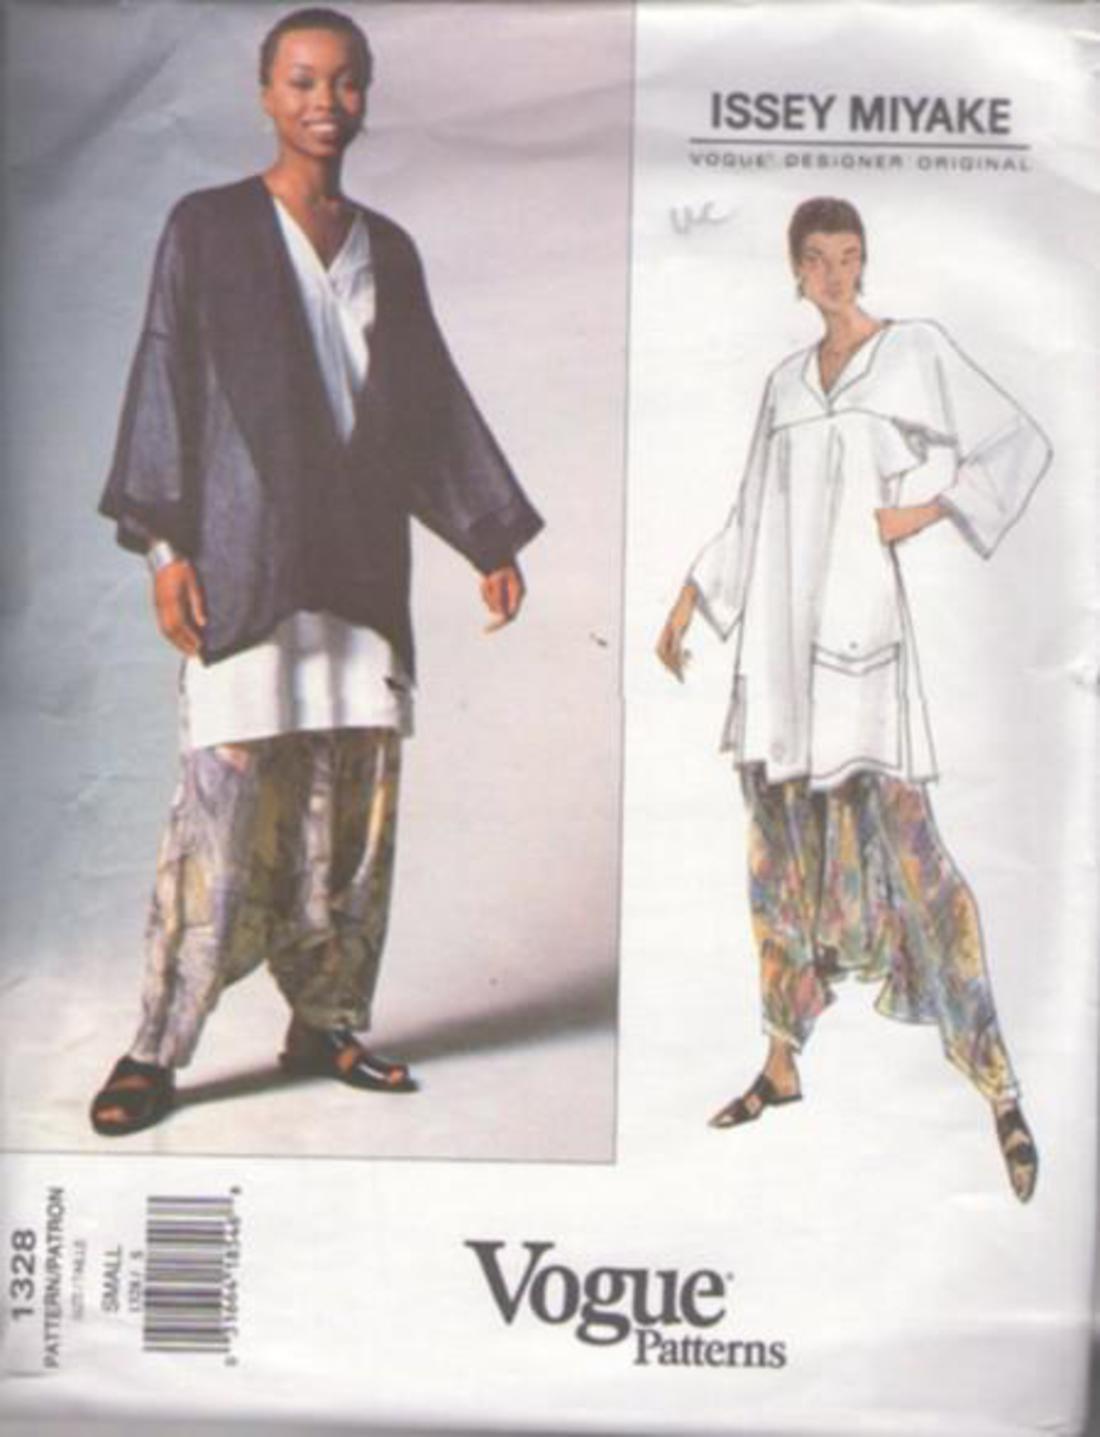 Lrg-Xlg-Xxl Vogue Designer Original Pattern V1022 Issey Miyake Size ZZ 